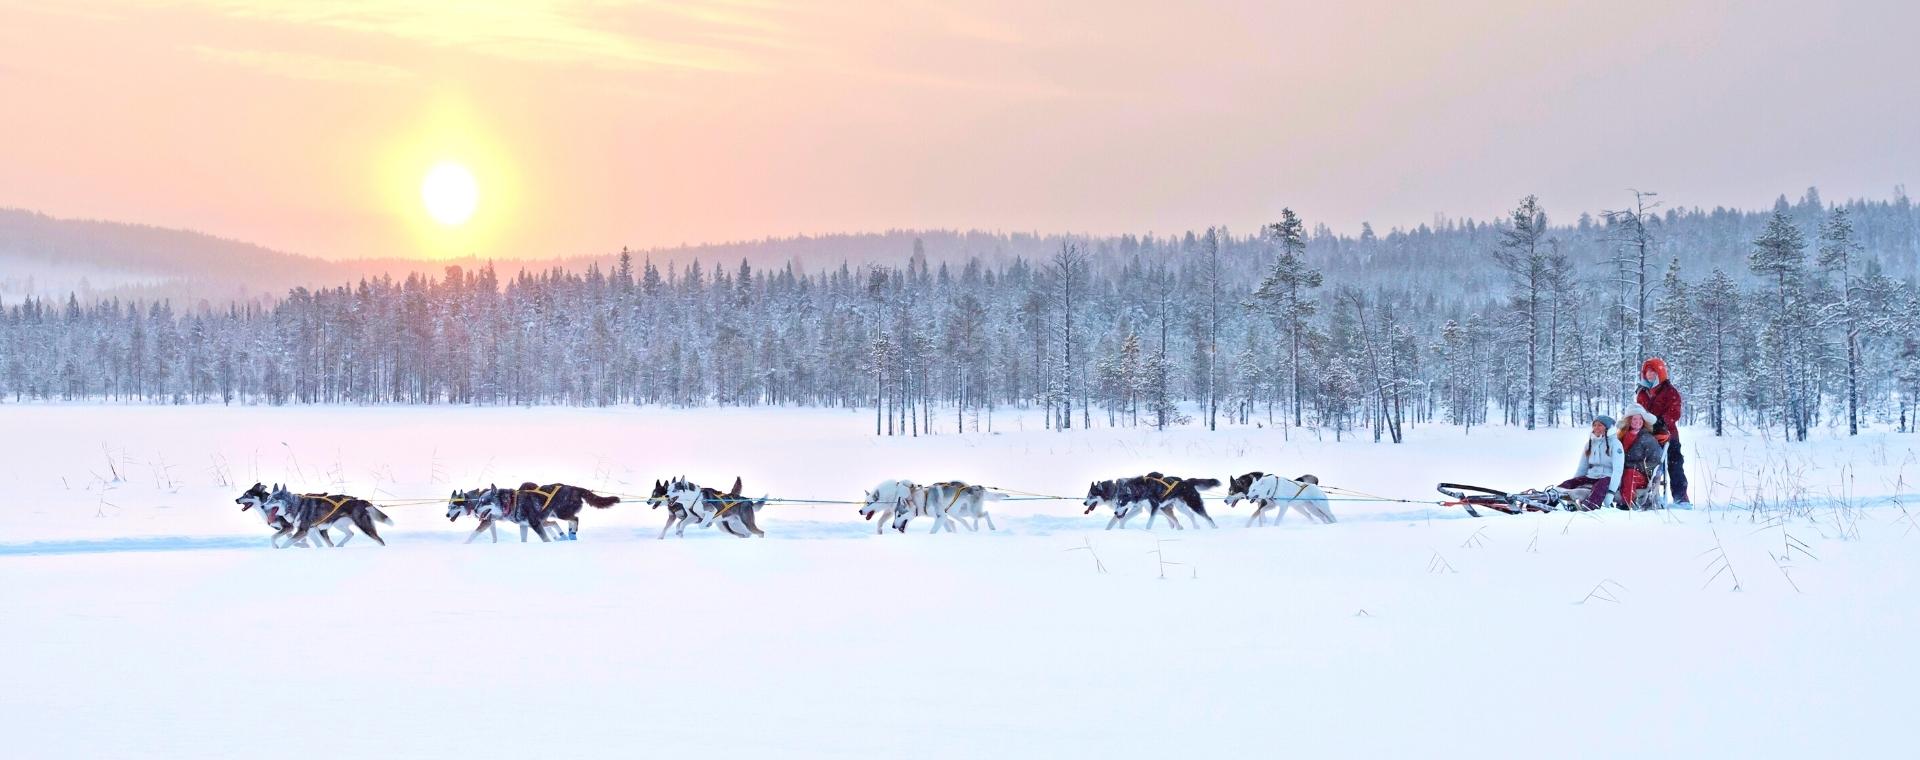 Séjour chien de traineau - Suède : Vivre la Laponie Suédoise